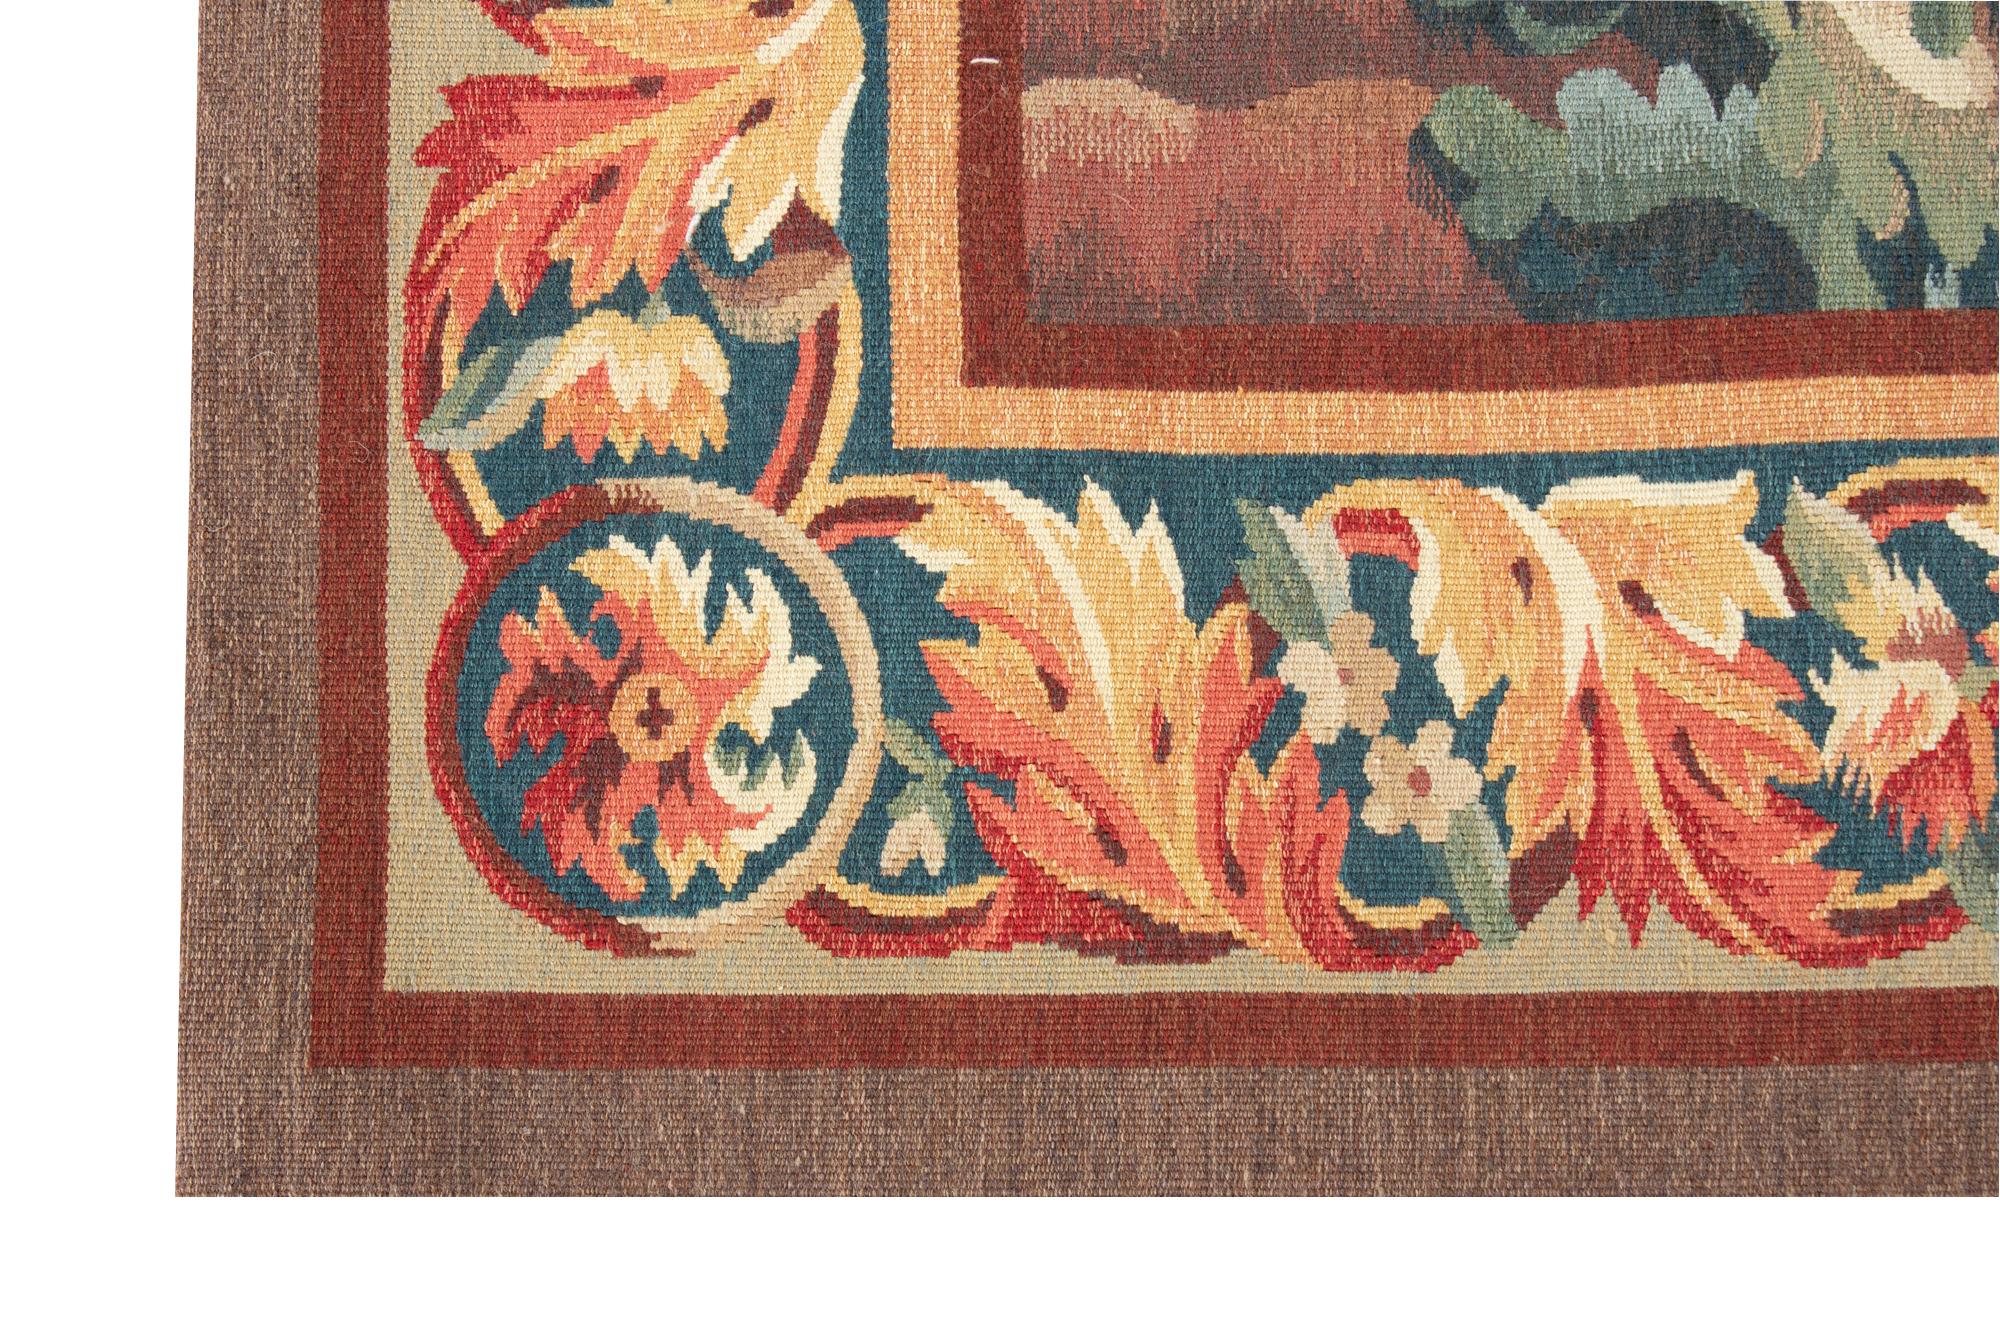 Une gracieuse tapisserie de verdure dans le style de celles tissées au XVIIIe siècle à Aubusson, l'une des principales Townes de tapisserie en France. À cette époque, les paysages avec des arbres, des oiseaux et des rivières étaient populaires et